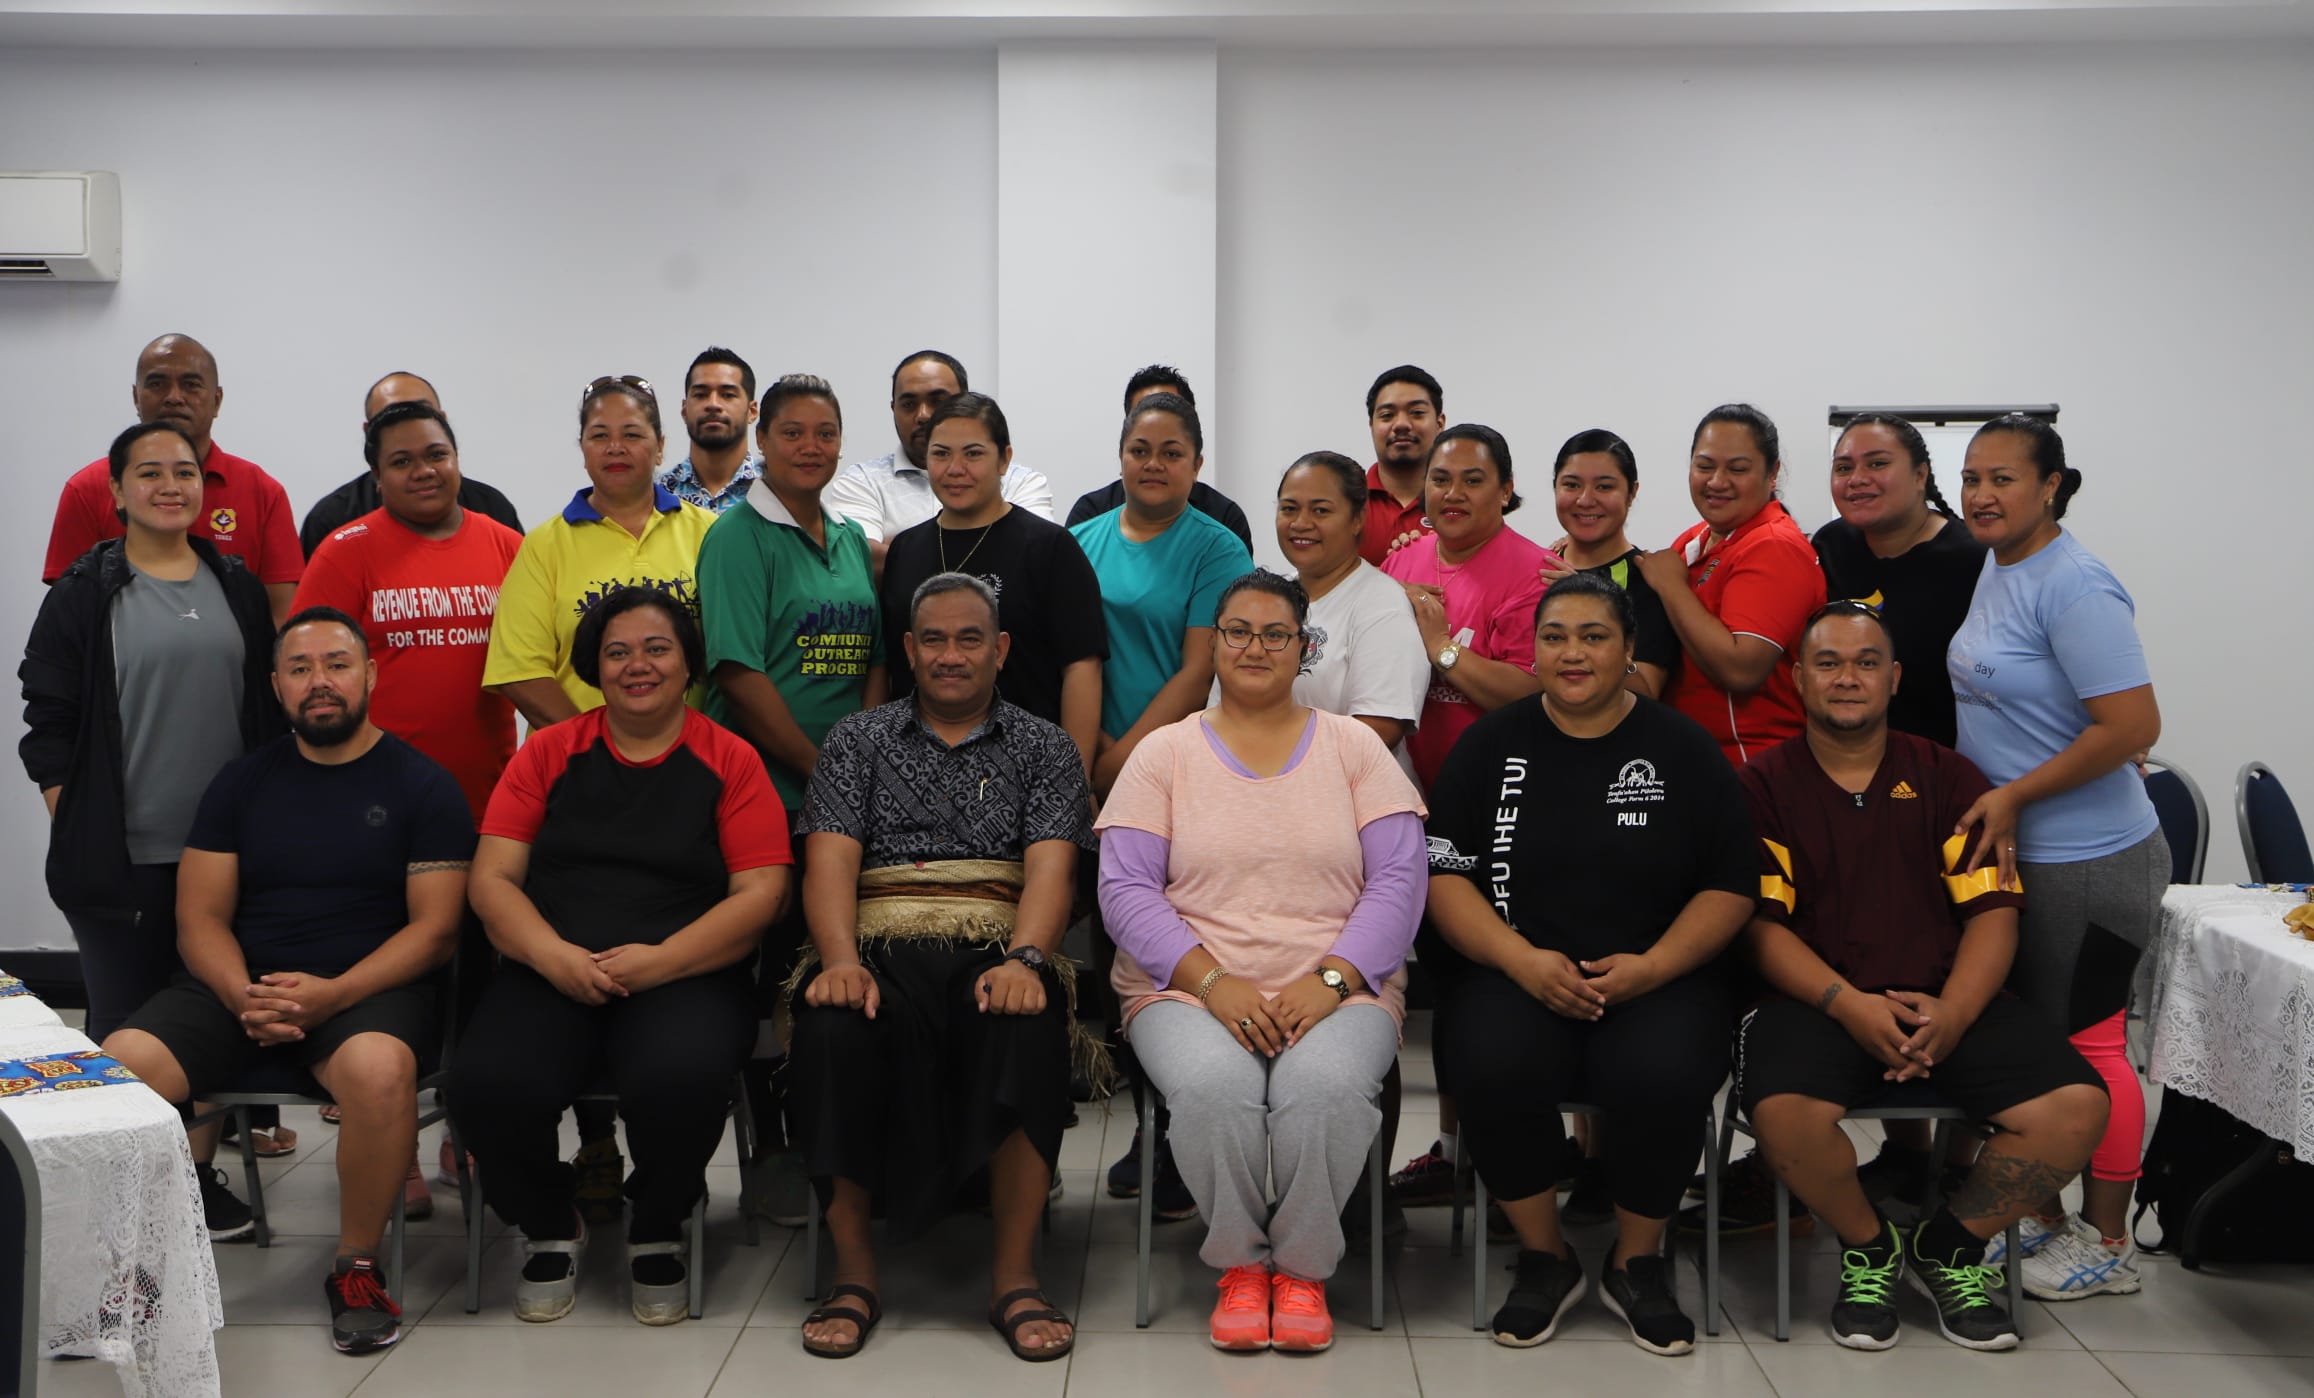 Zumba training is underway for civil servants in Tonga.